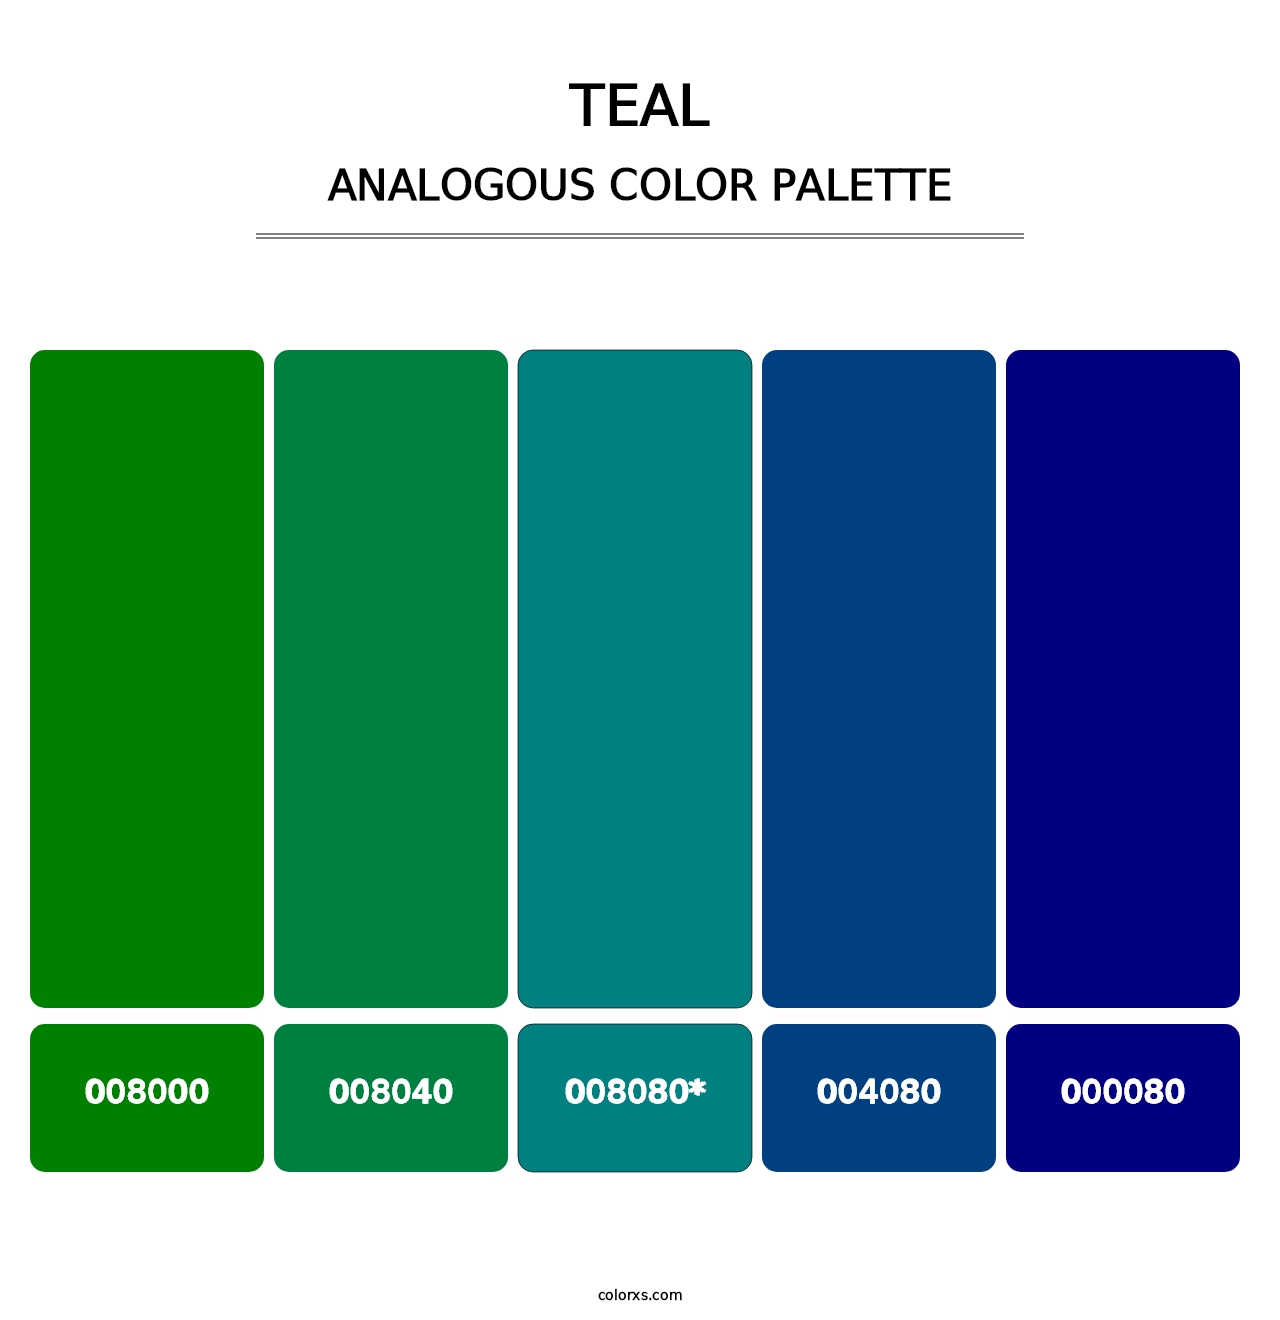 Teal - Analogous Color Palette